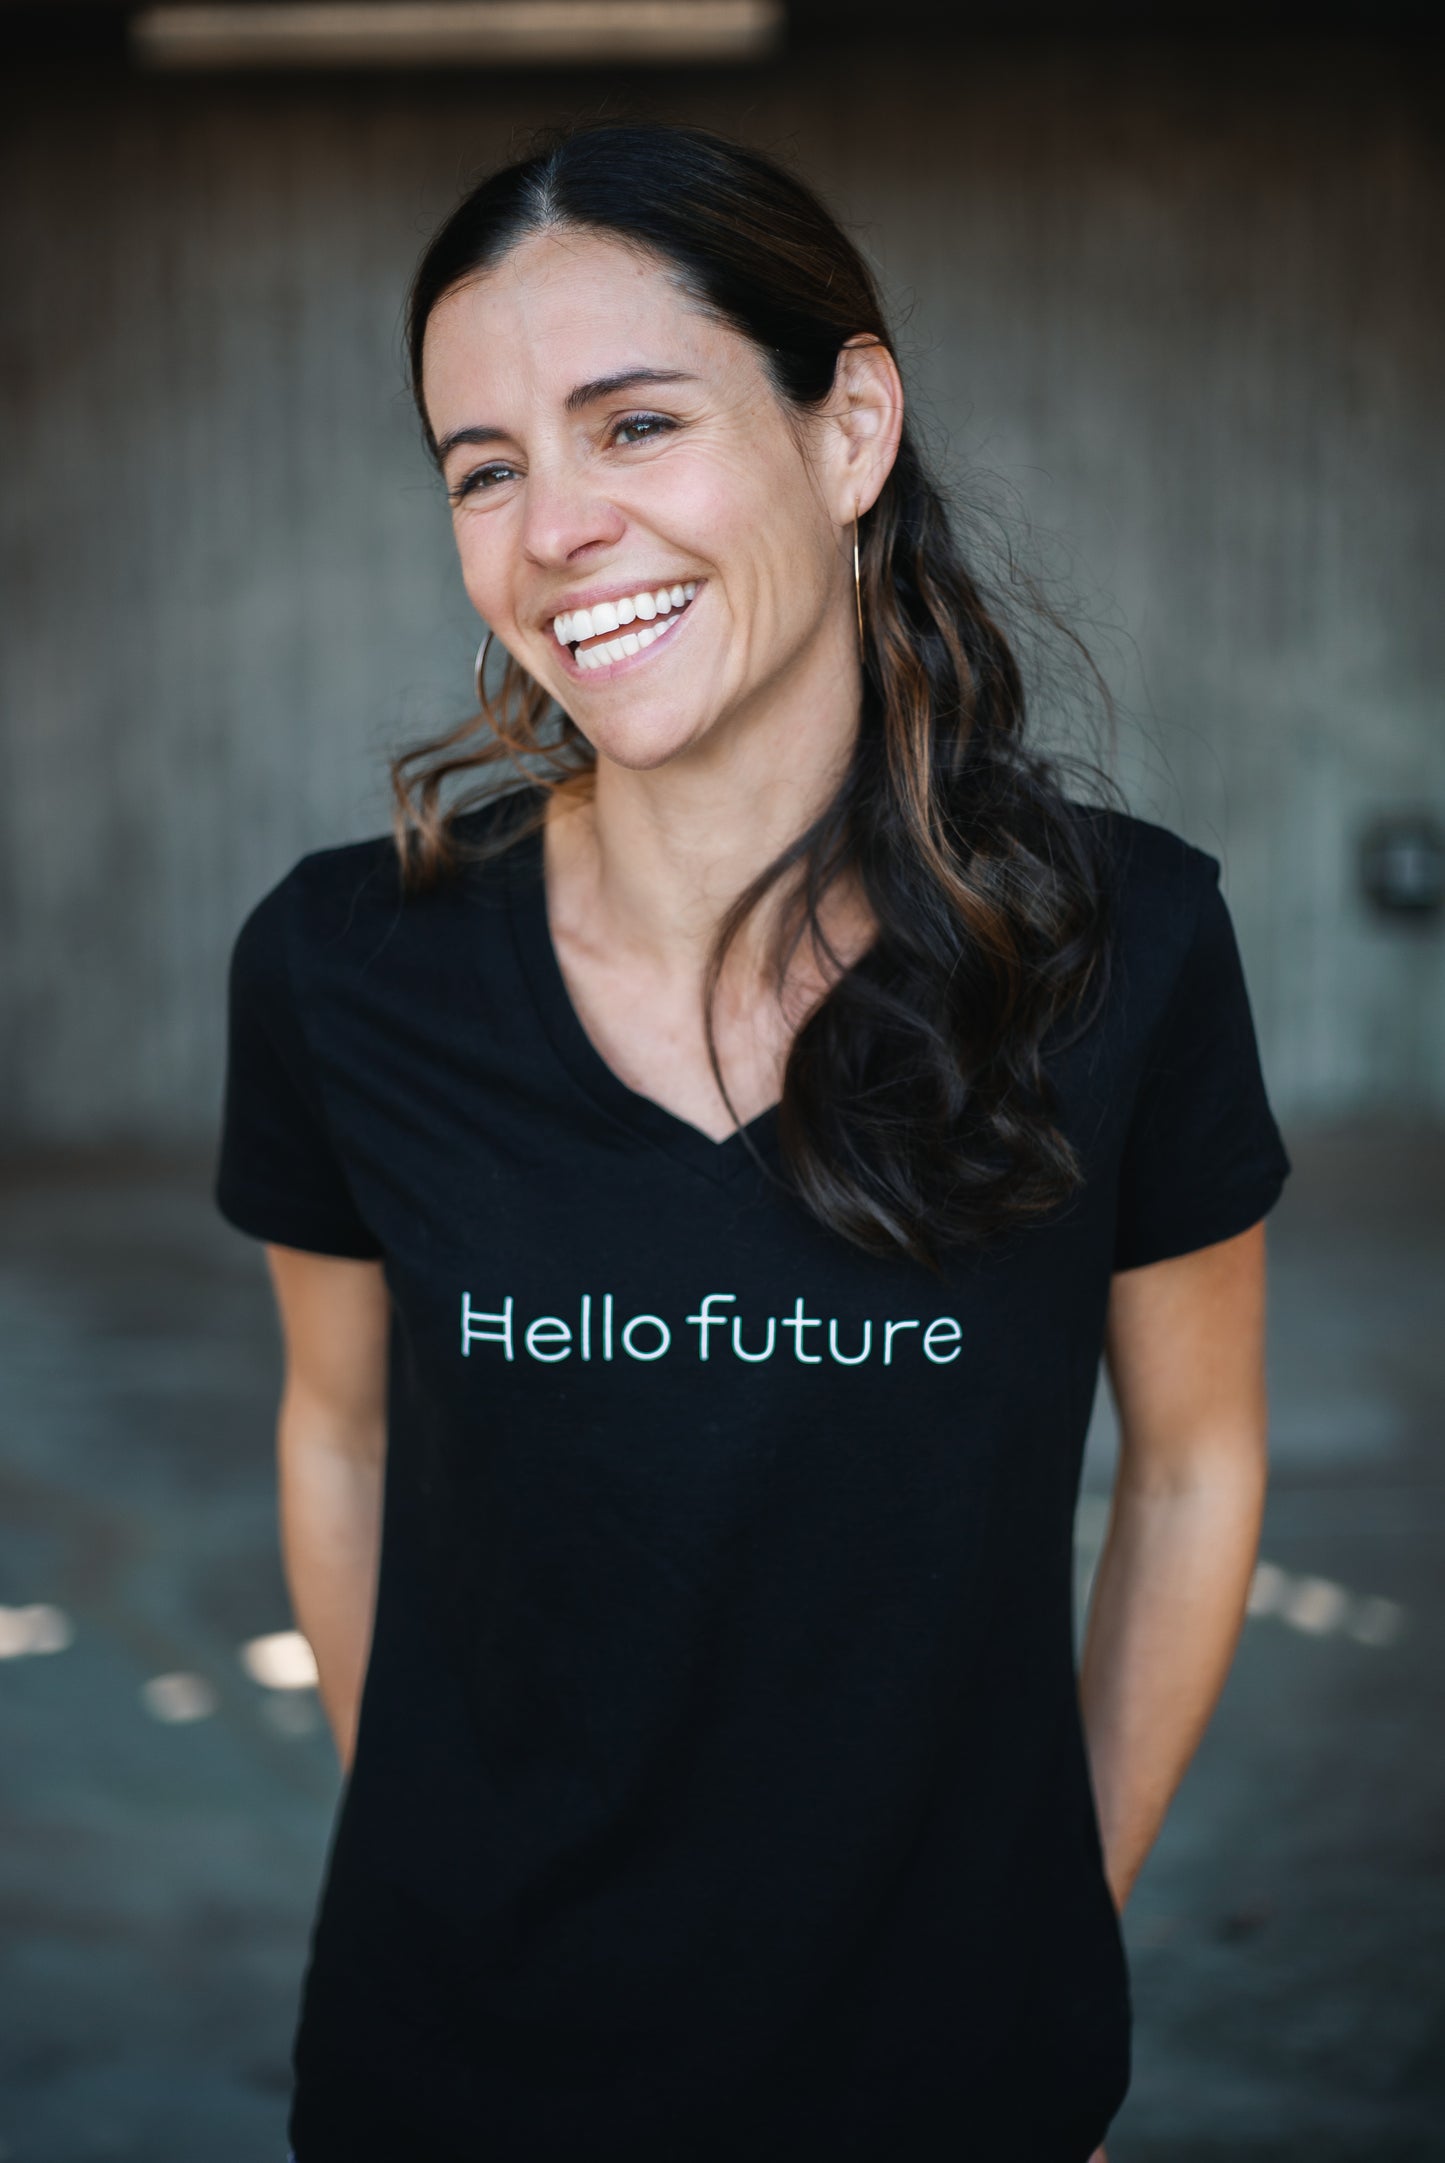 "Hello Future" V-neck (womens, small font)